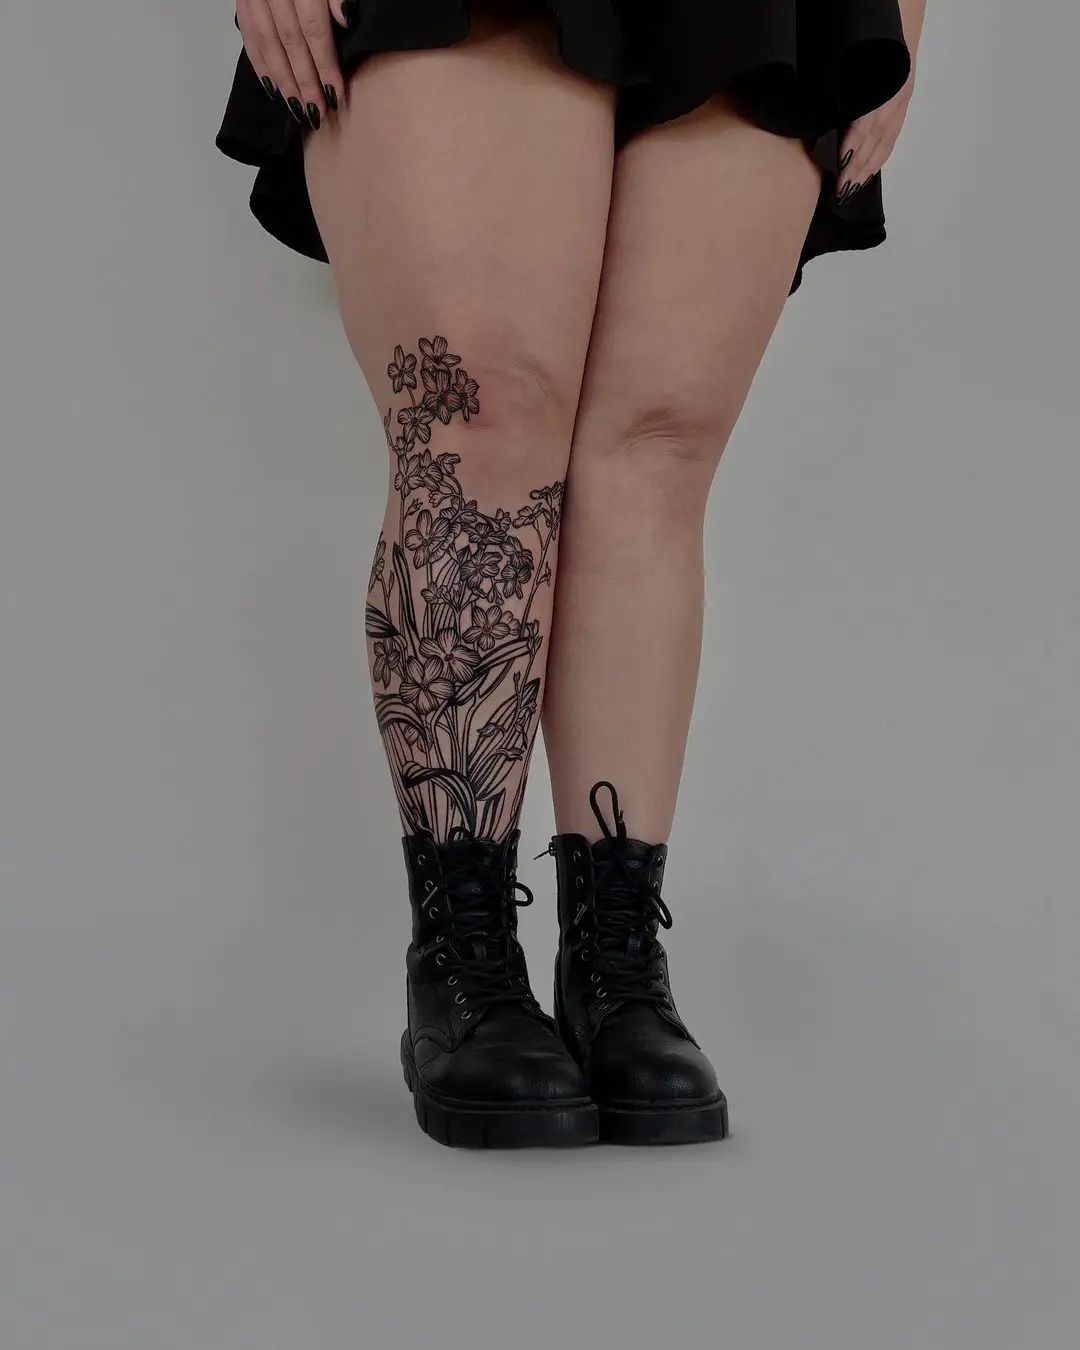 Leg sleeve tattoos by hamova.alona